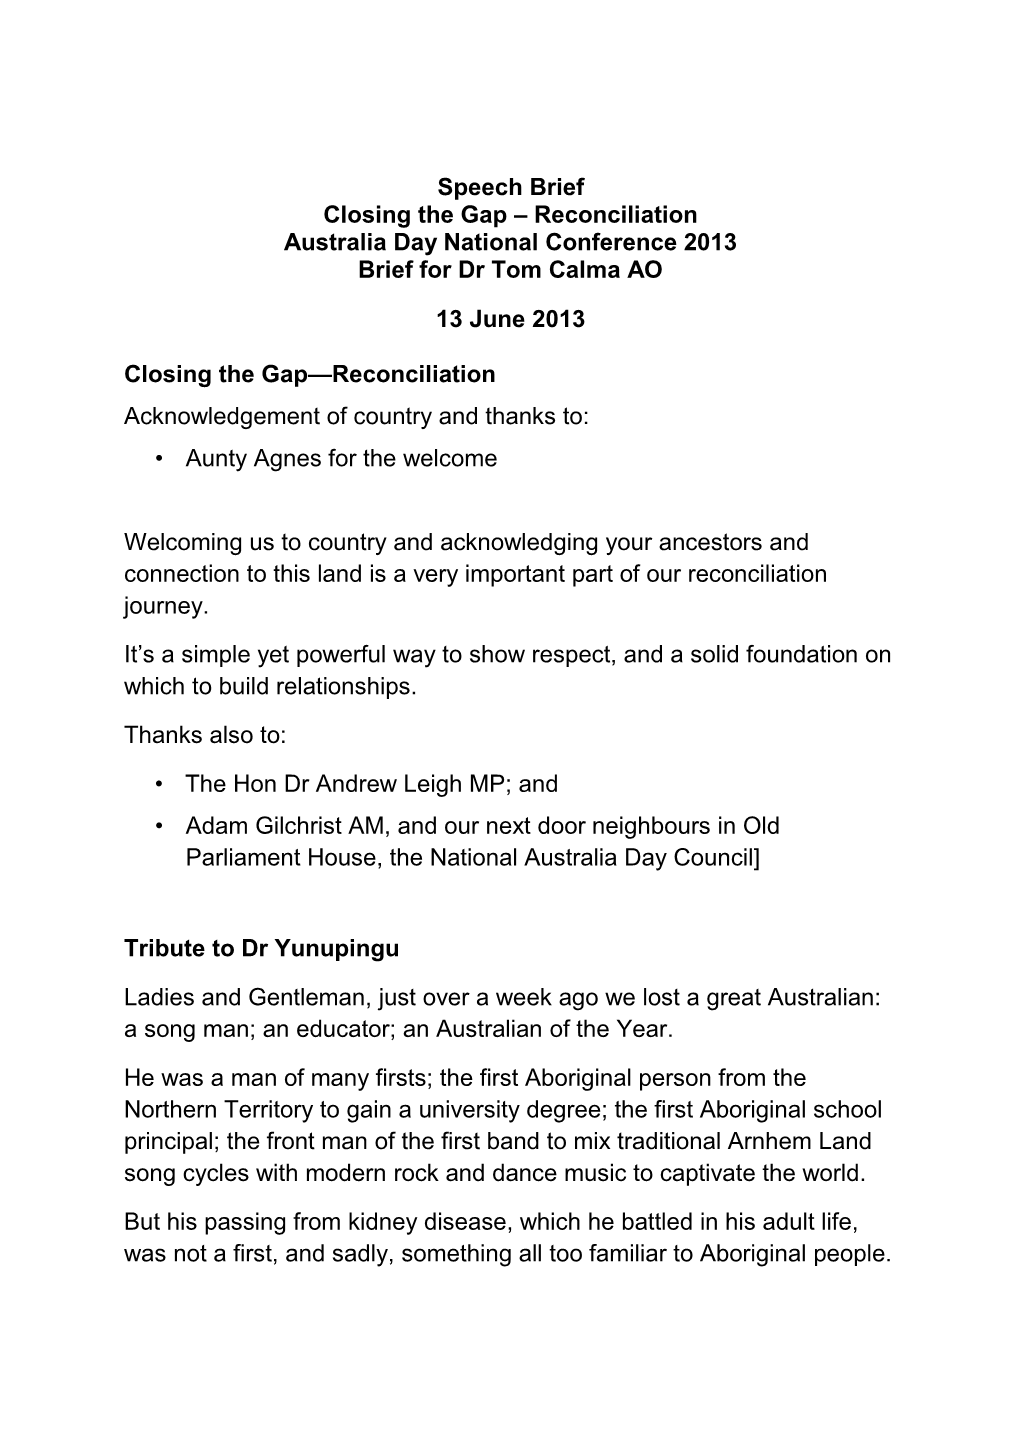 Speech Brief Closing the Gap – Reconciliation Australia Day National Conference 2013 Brief for Dr Tom Calma AO